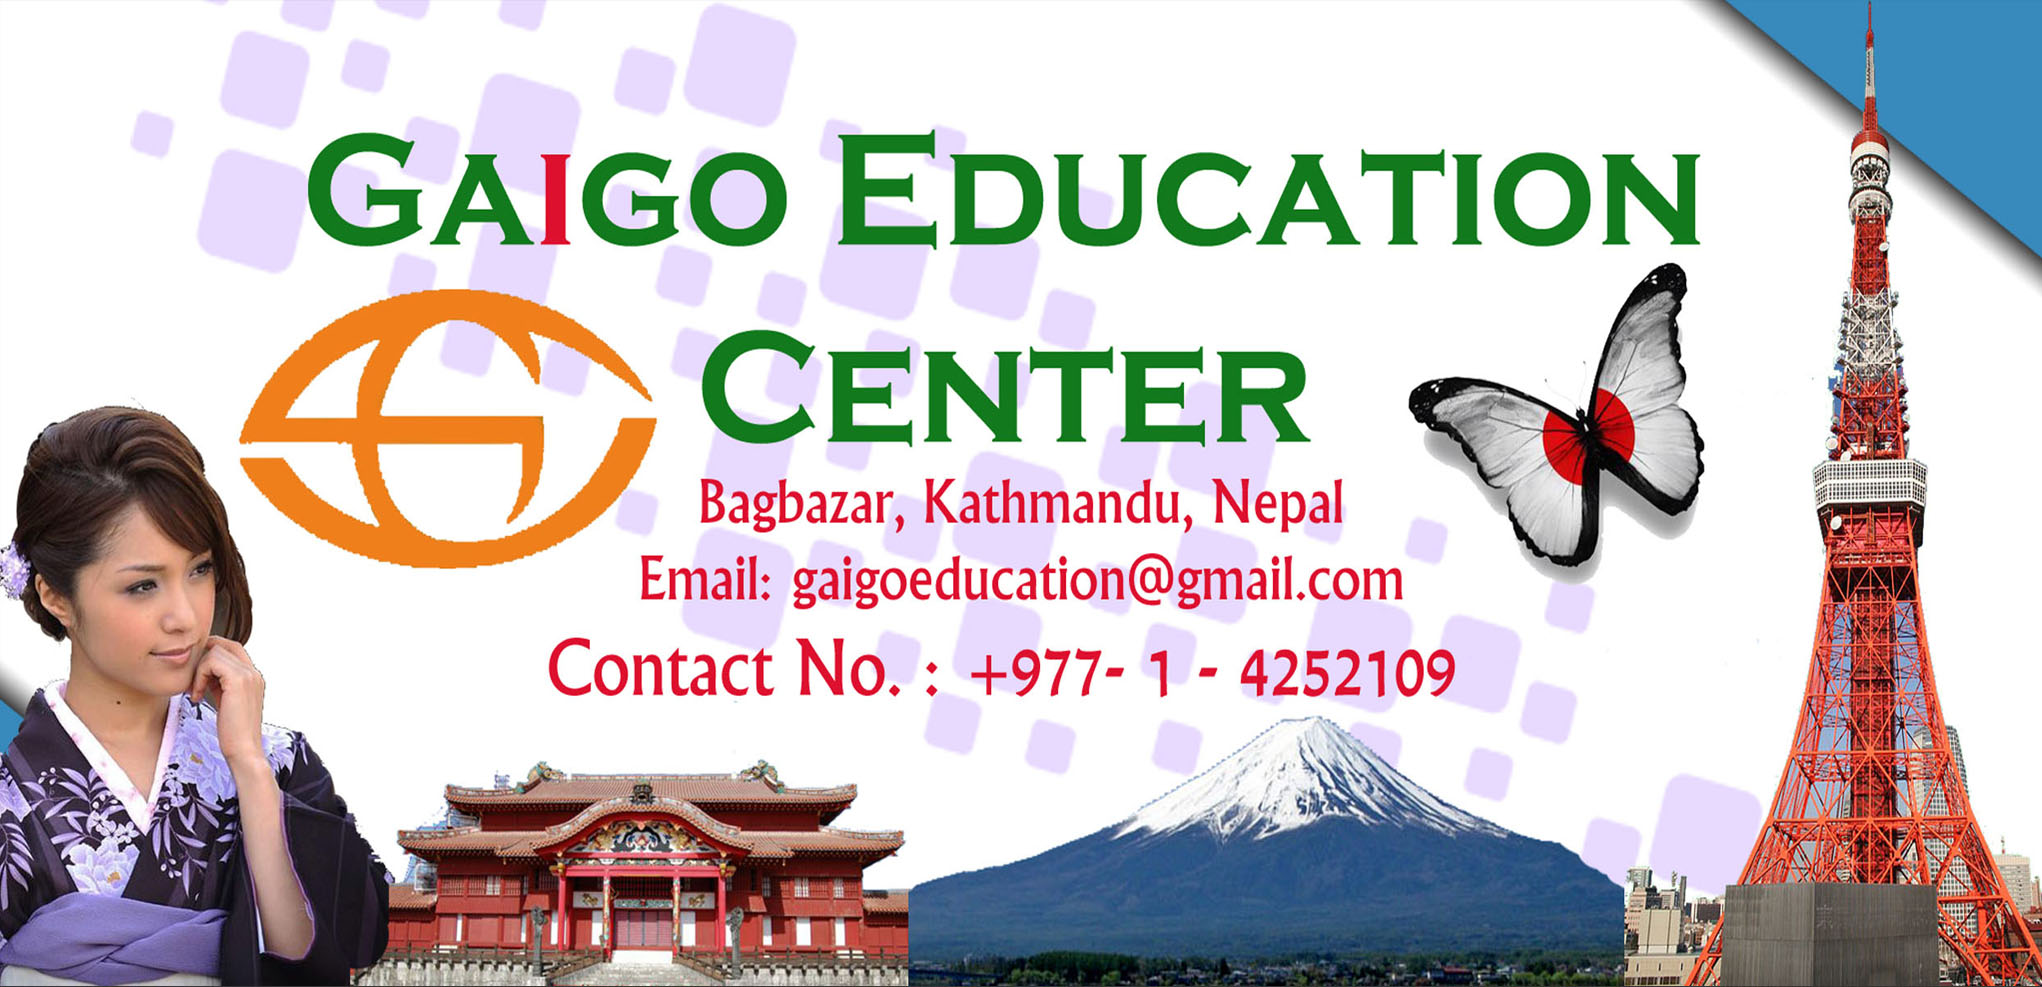 Gaigo Education Center